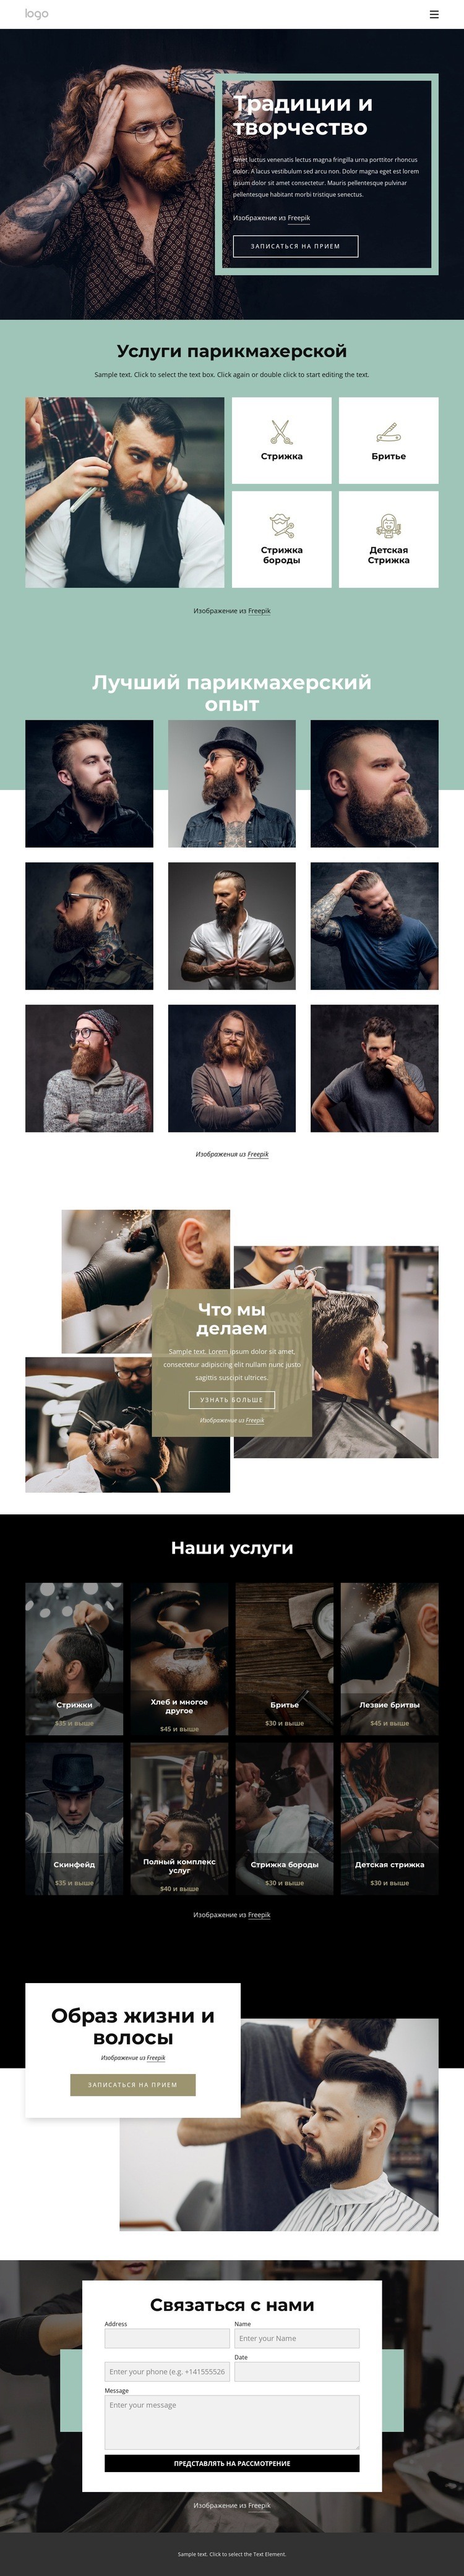 Общественный парикмахерский салон Одностраничный шаблон